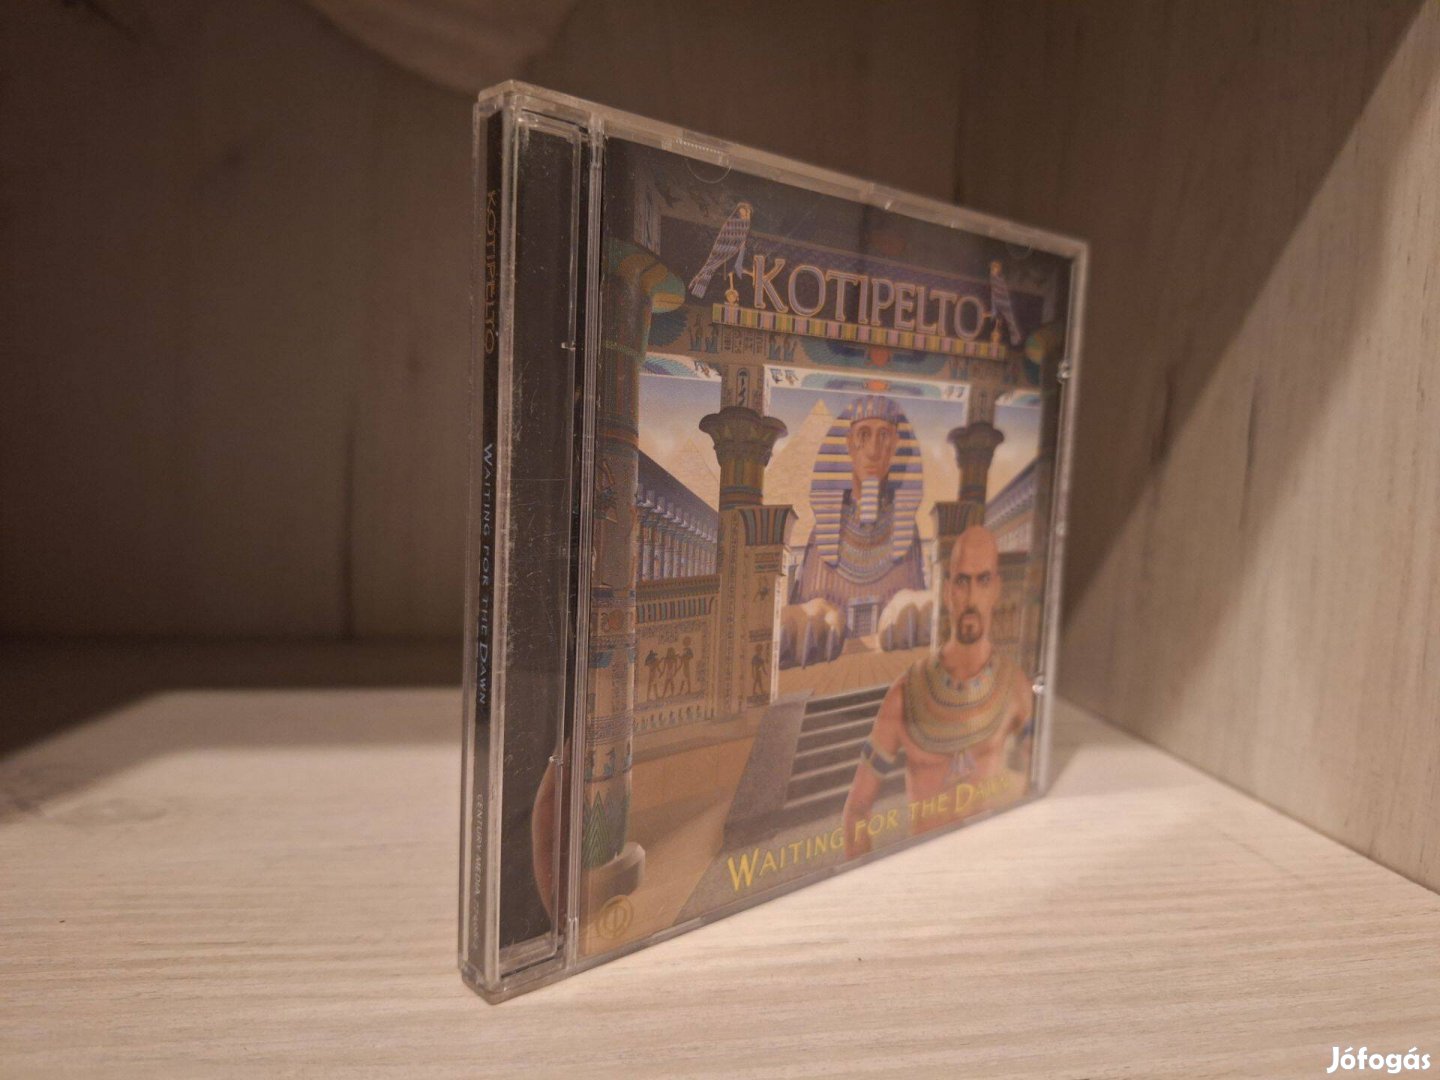 Kotipelto - Waiting For The Dawn CD